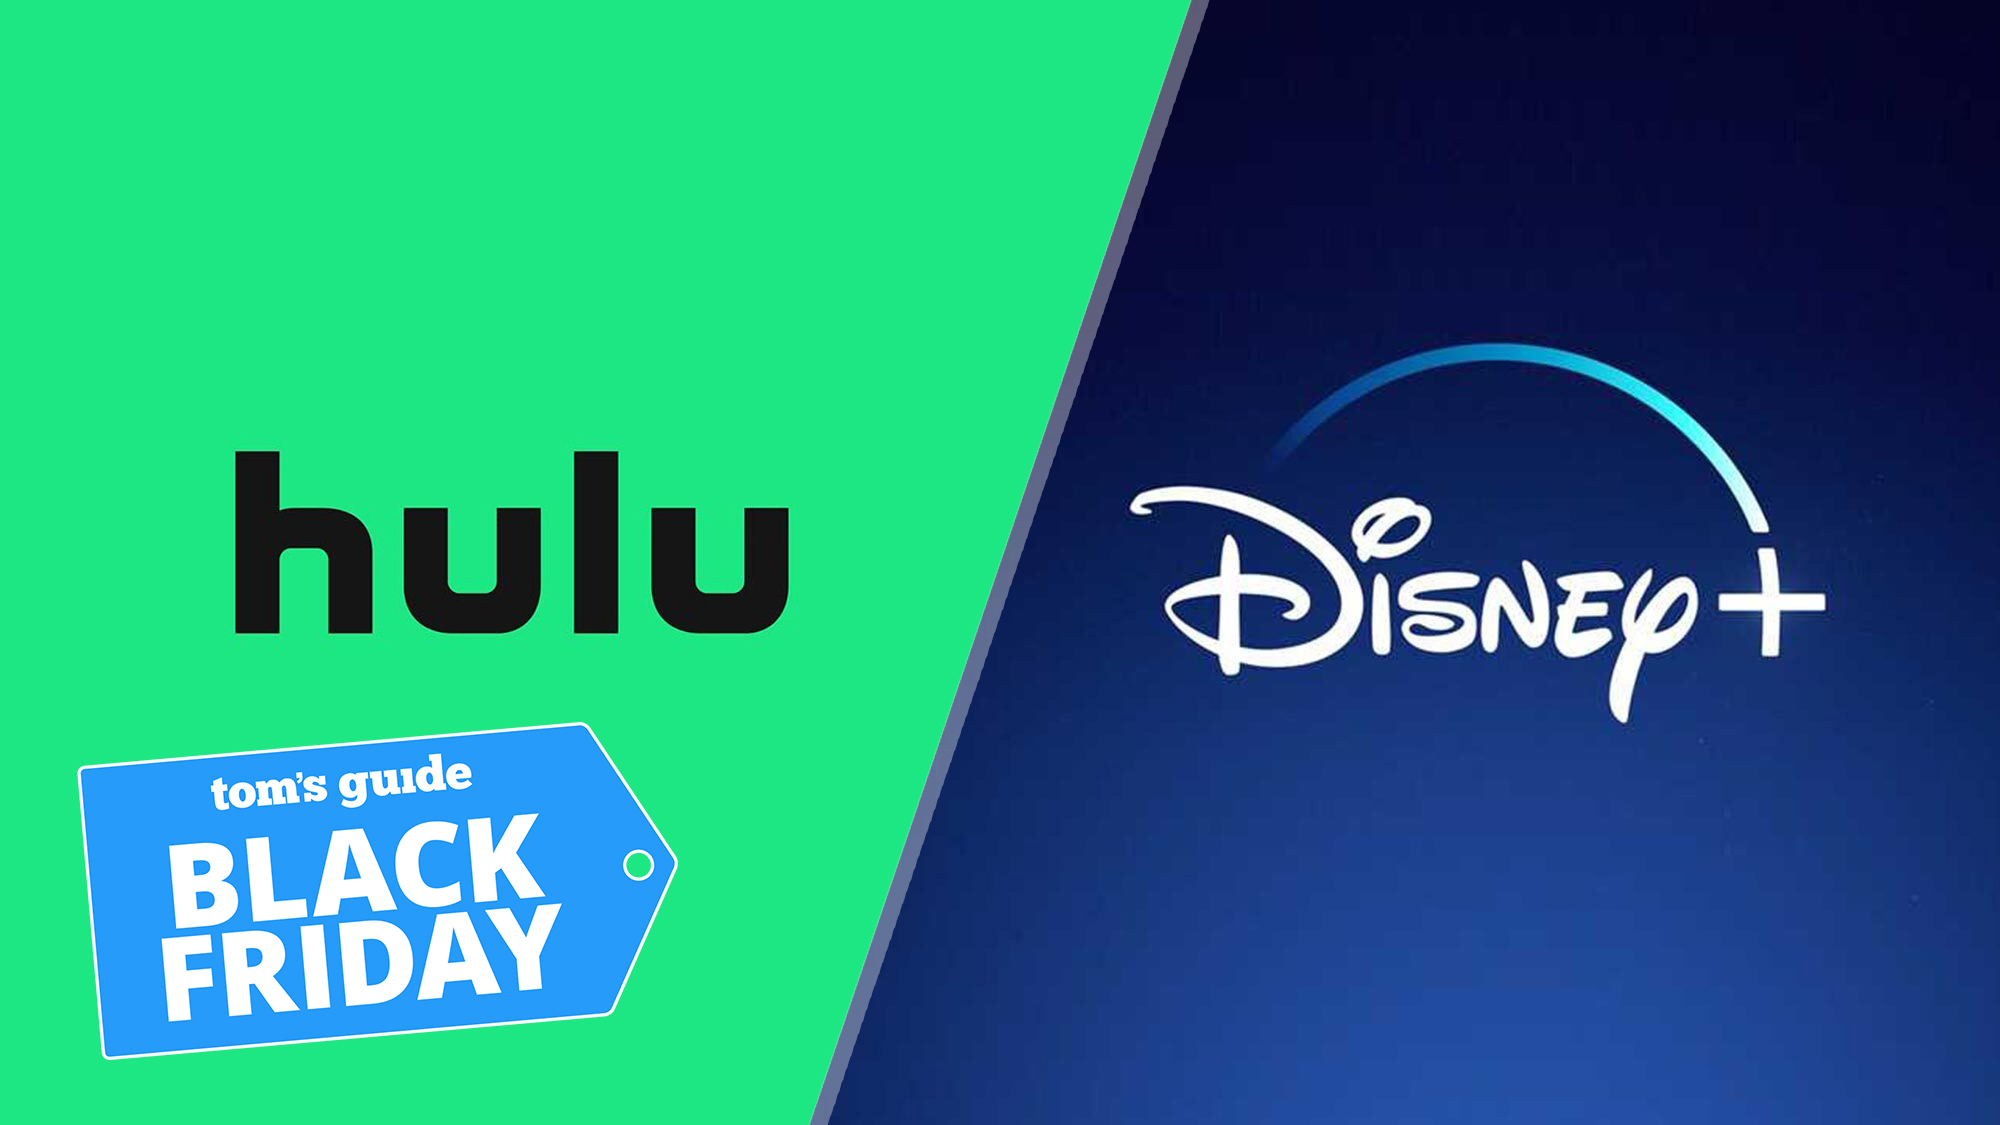 (De izquierda a derecha) Los logotipos de Hulu, Disney Plus con una insignia de Black Friday